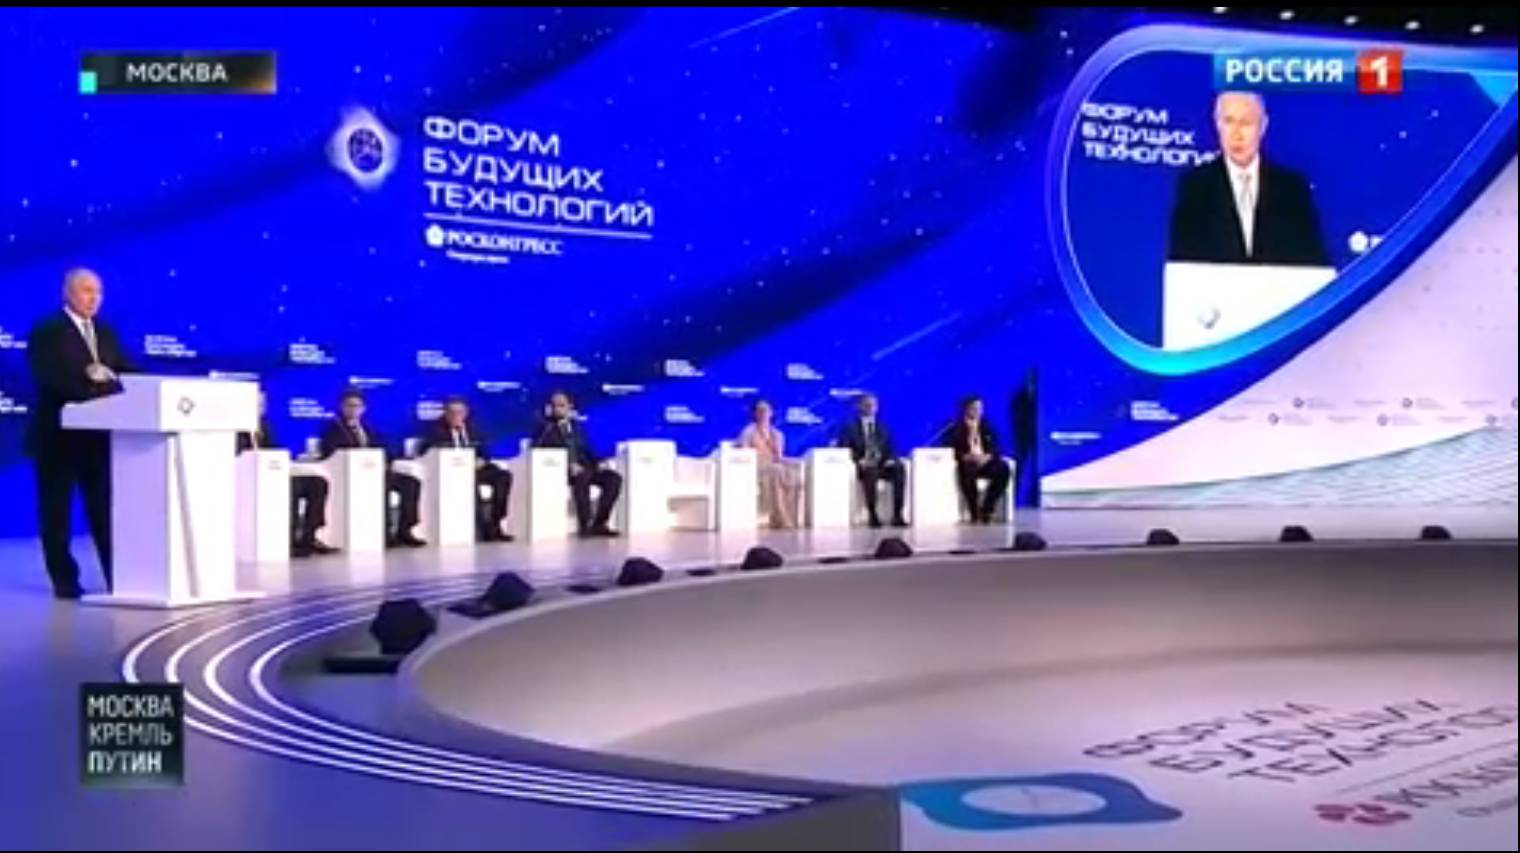 Putin uczestniczy w panelu dyskusyjnym na wielkiej scenie z niebieskim tłem